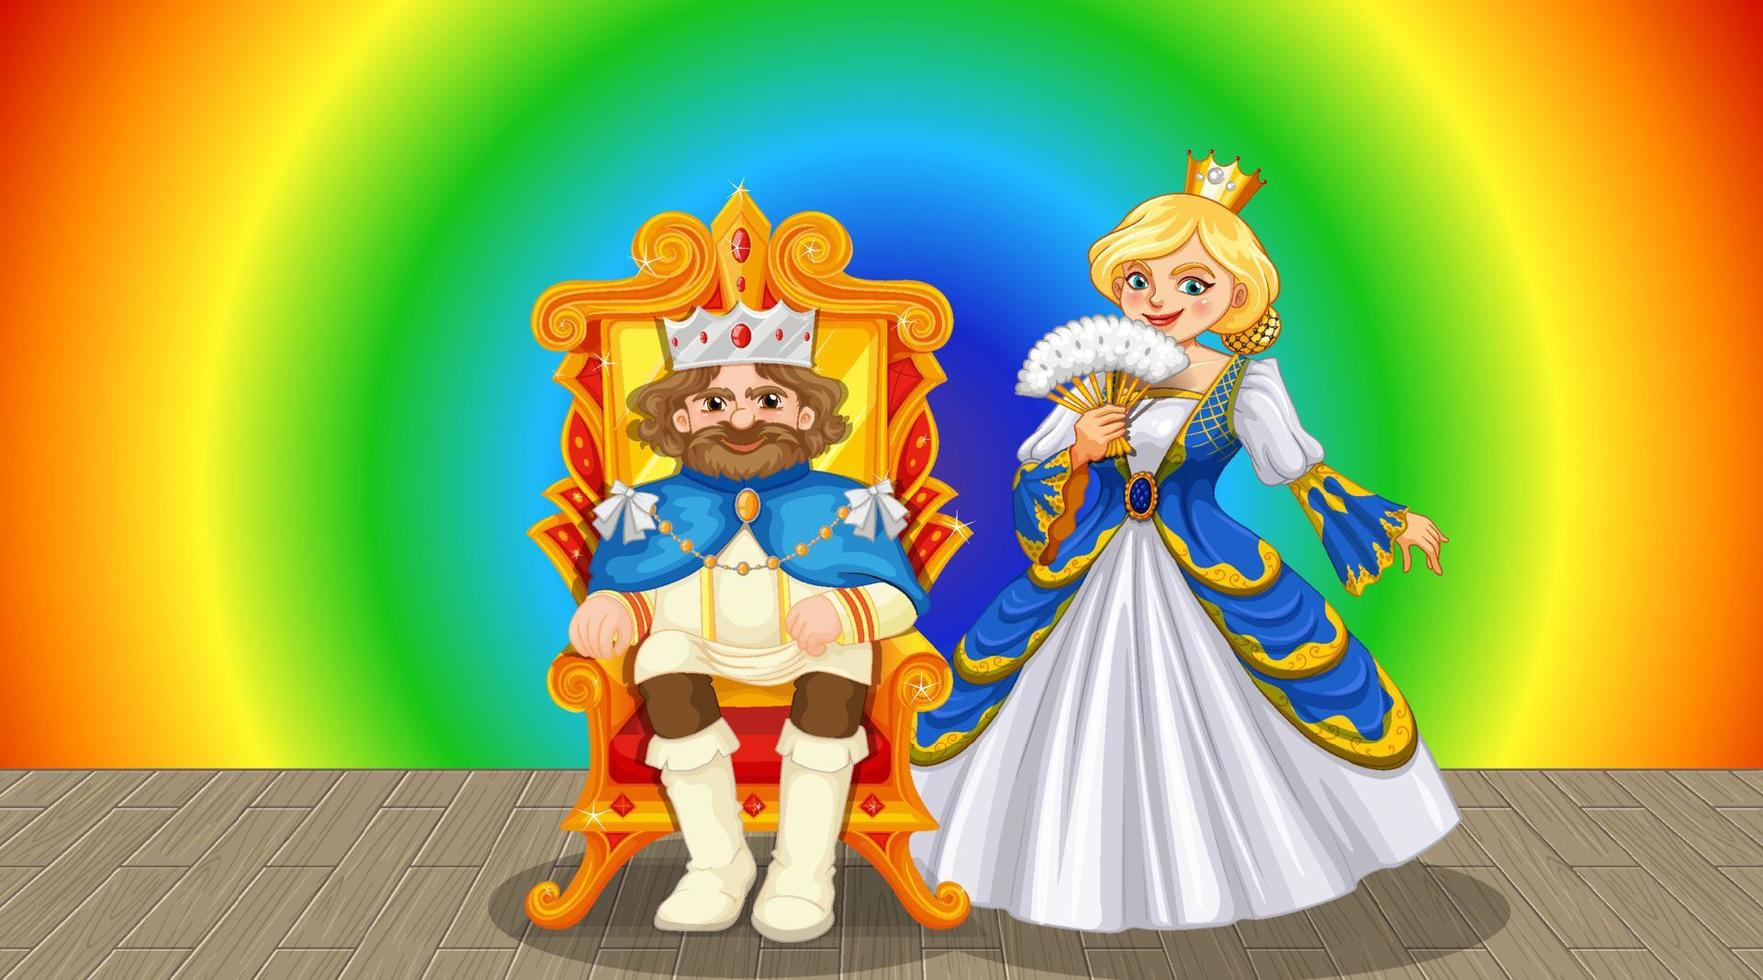 König und Königin Cartoon-Figur auf Regenbogen-Gradienten-Hintergrund vektor